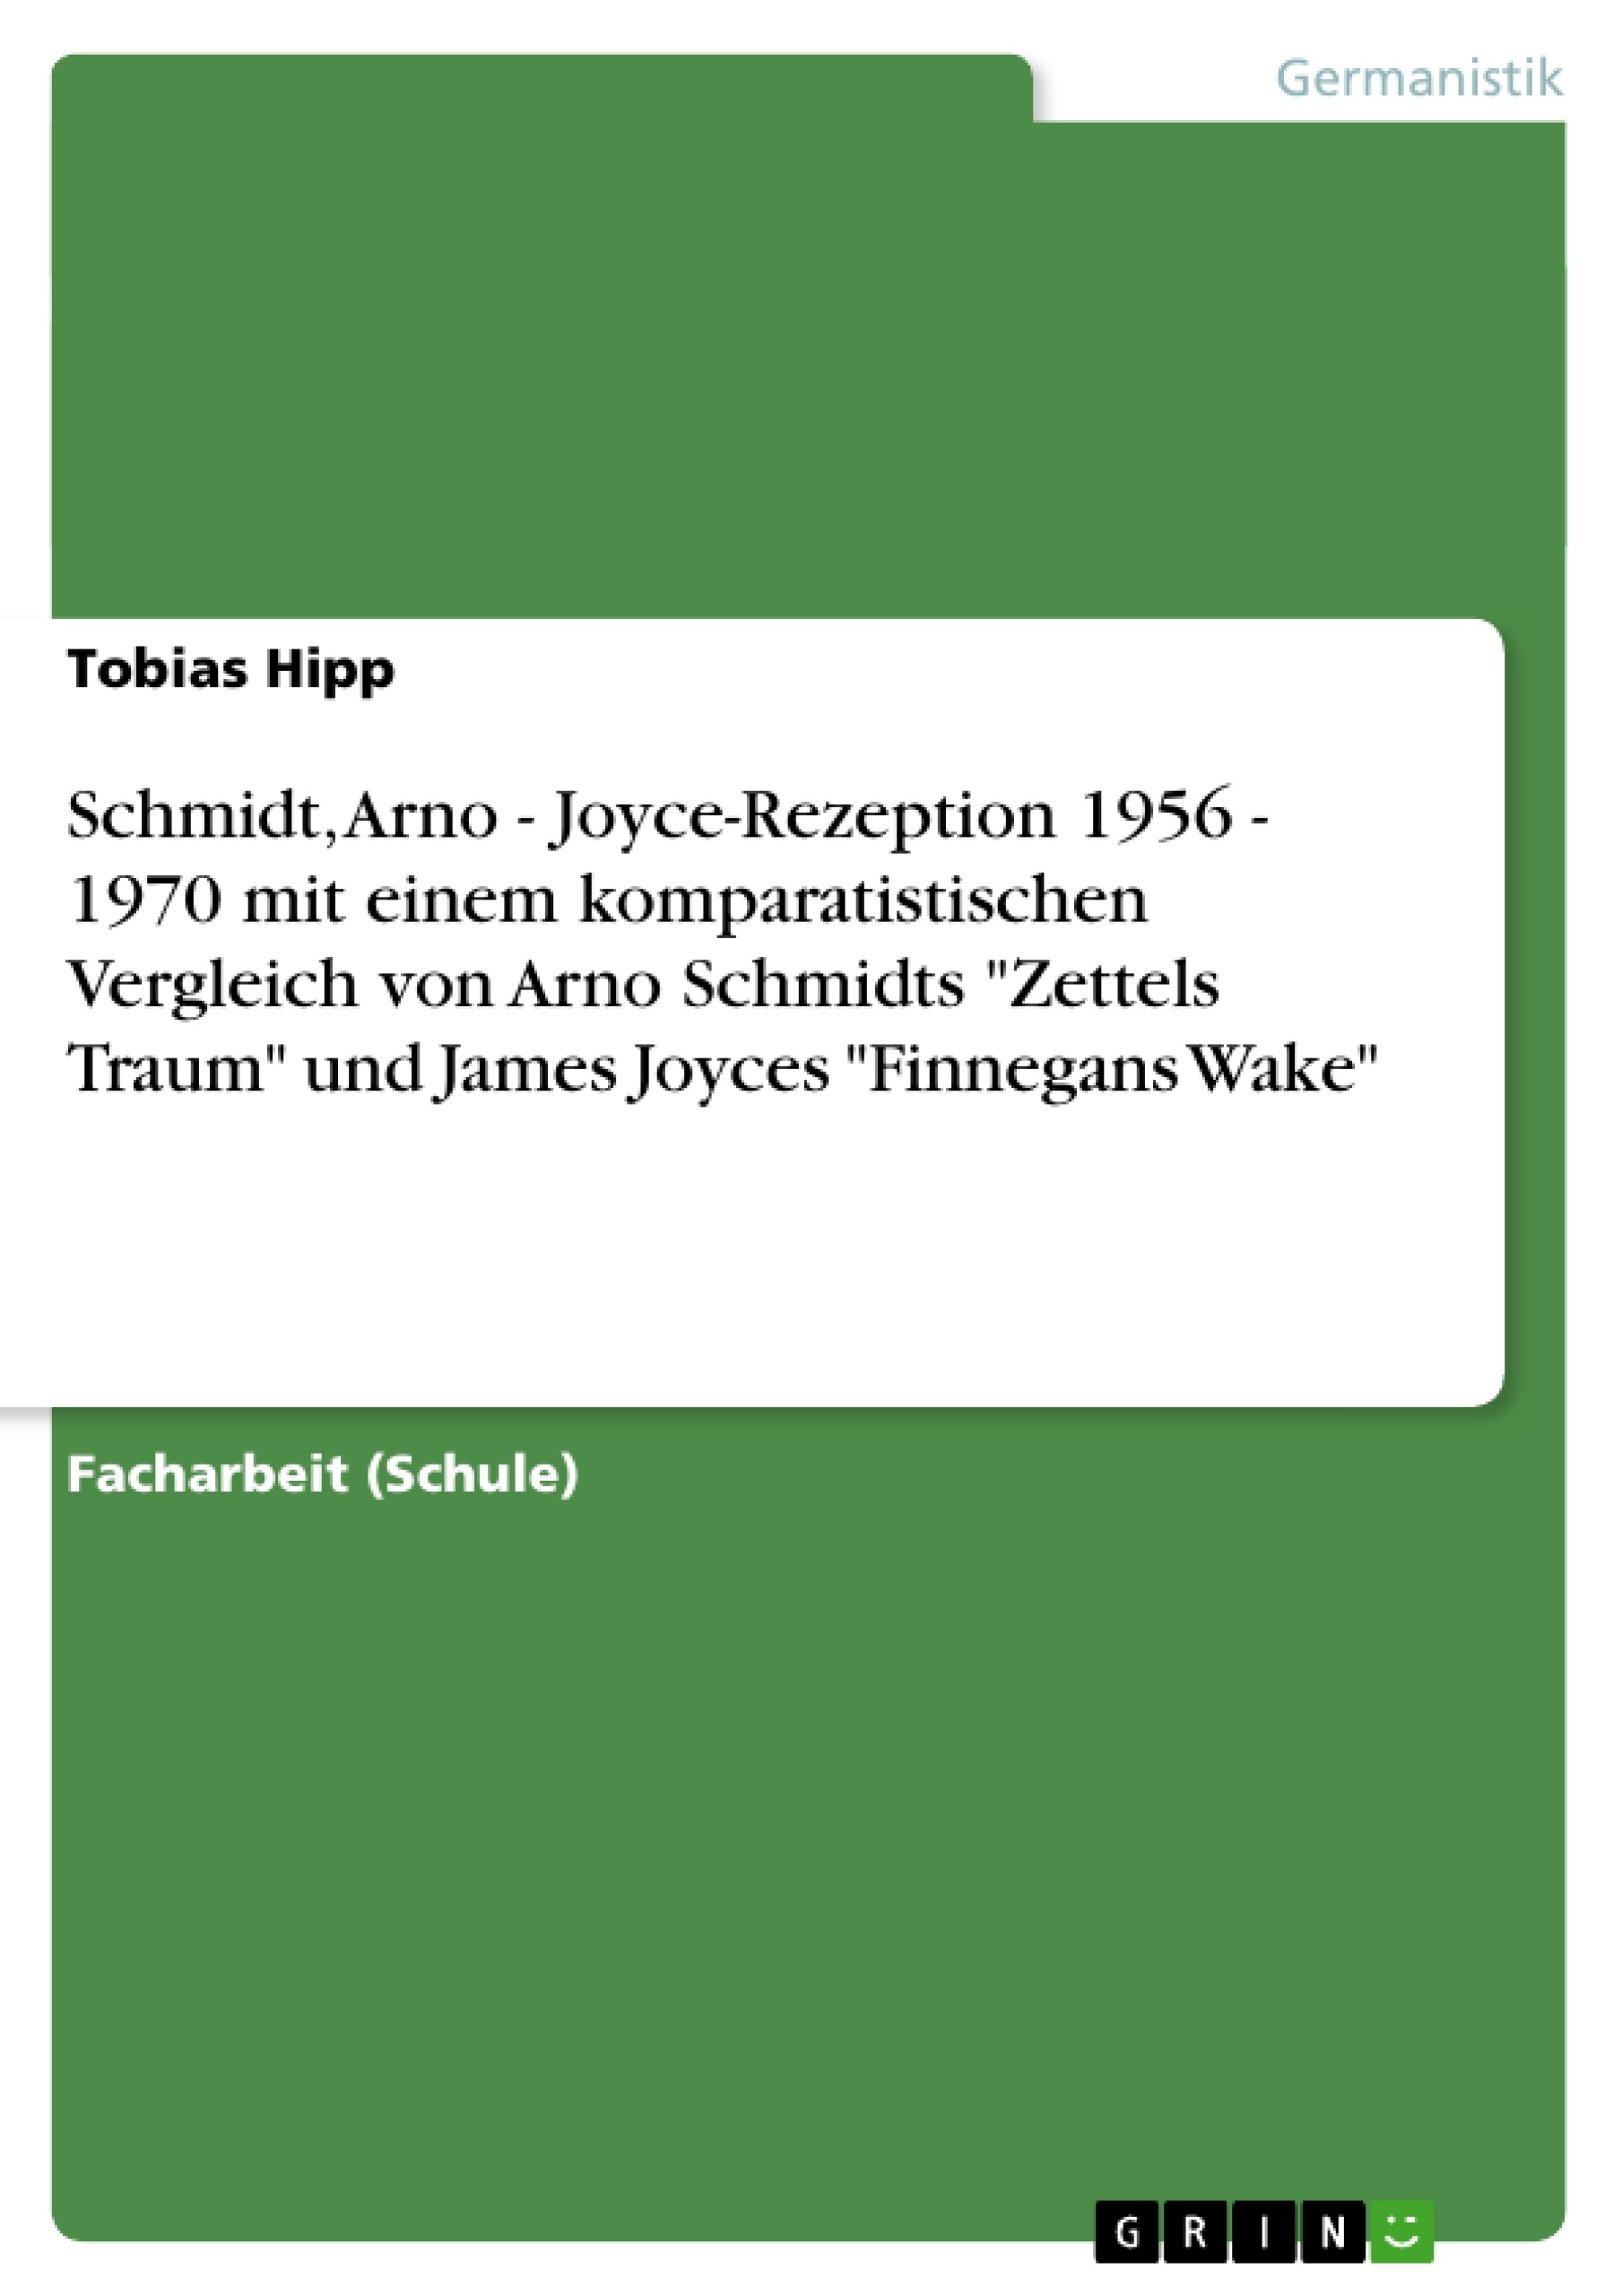 Title: Schmidt, Arno - Joyce-Rezeption 1956 - 1970 mit einem komparatistischen Vergleich von Arno Schmidts "Zettels Traum" und James Joyces "Finnegans Wake"